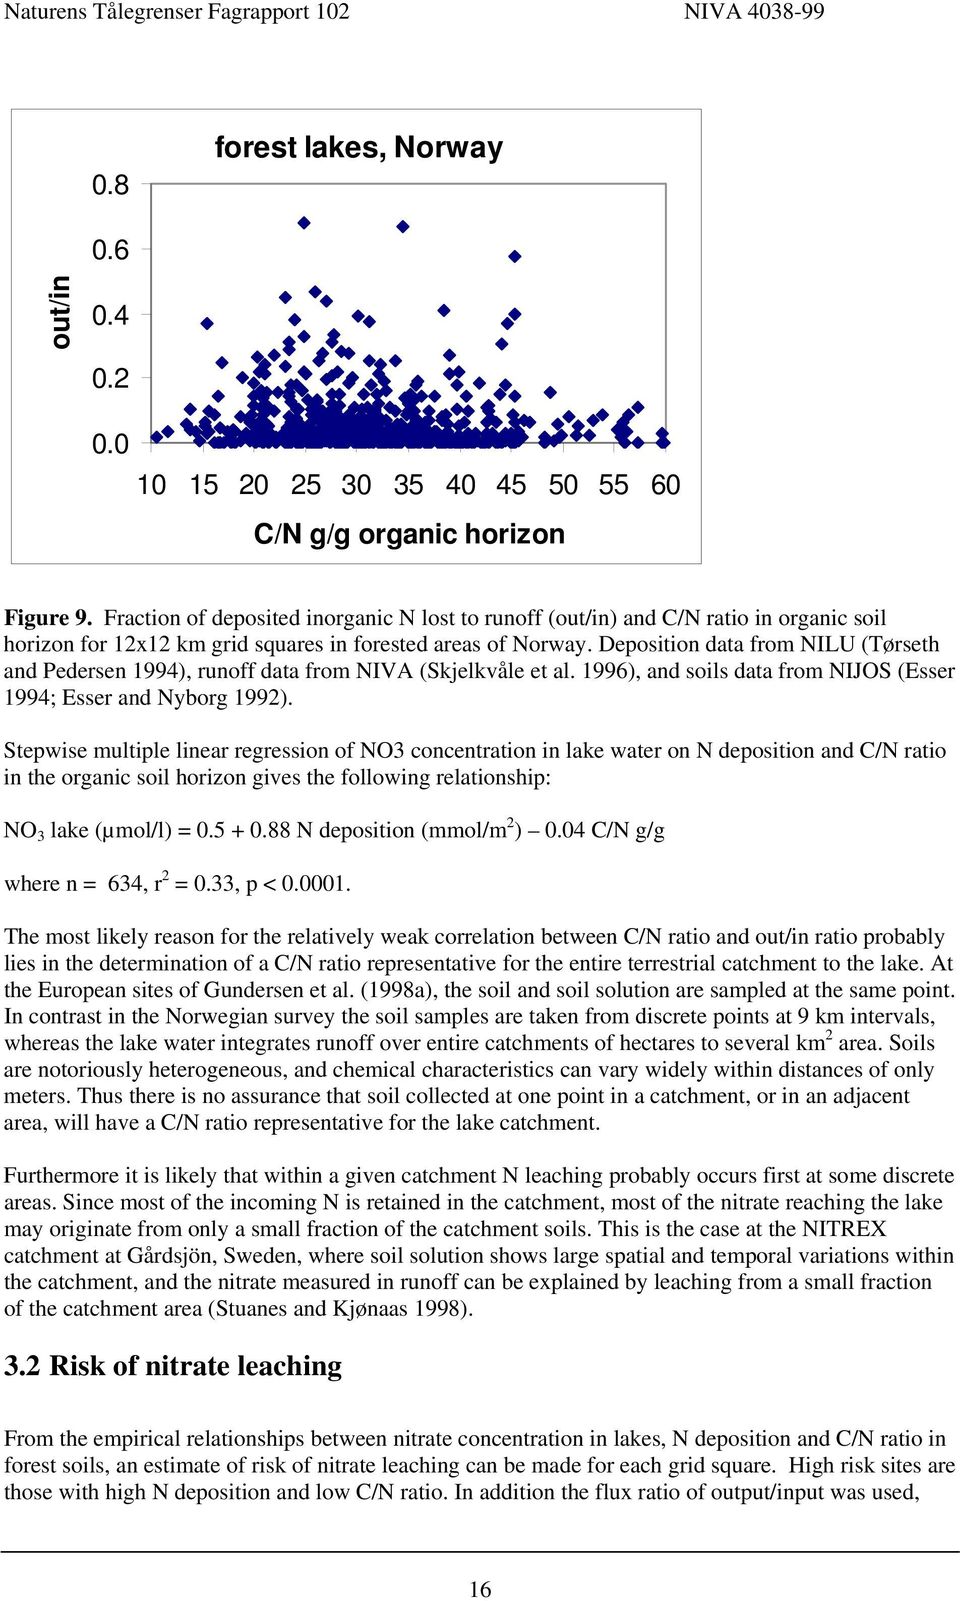 Deposition data from NILU (Tørseth and Pedersen 1994), runoff data from NIVA (Skjelkvåle et al. 1996), and soils data from NIJOS (Esser 1994; Esser and Nyborg 1992).